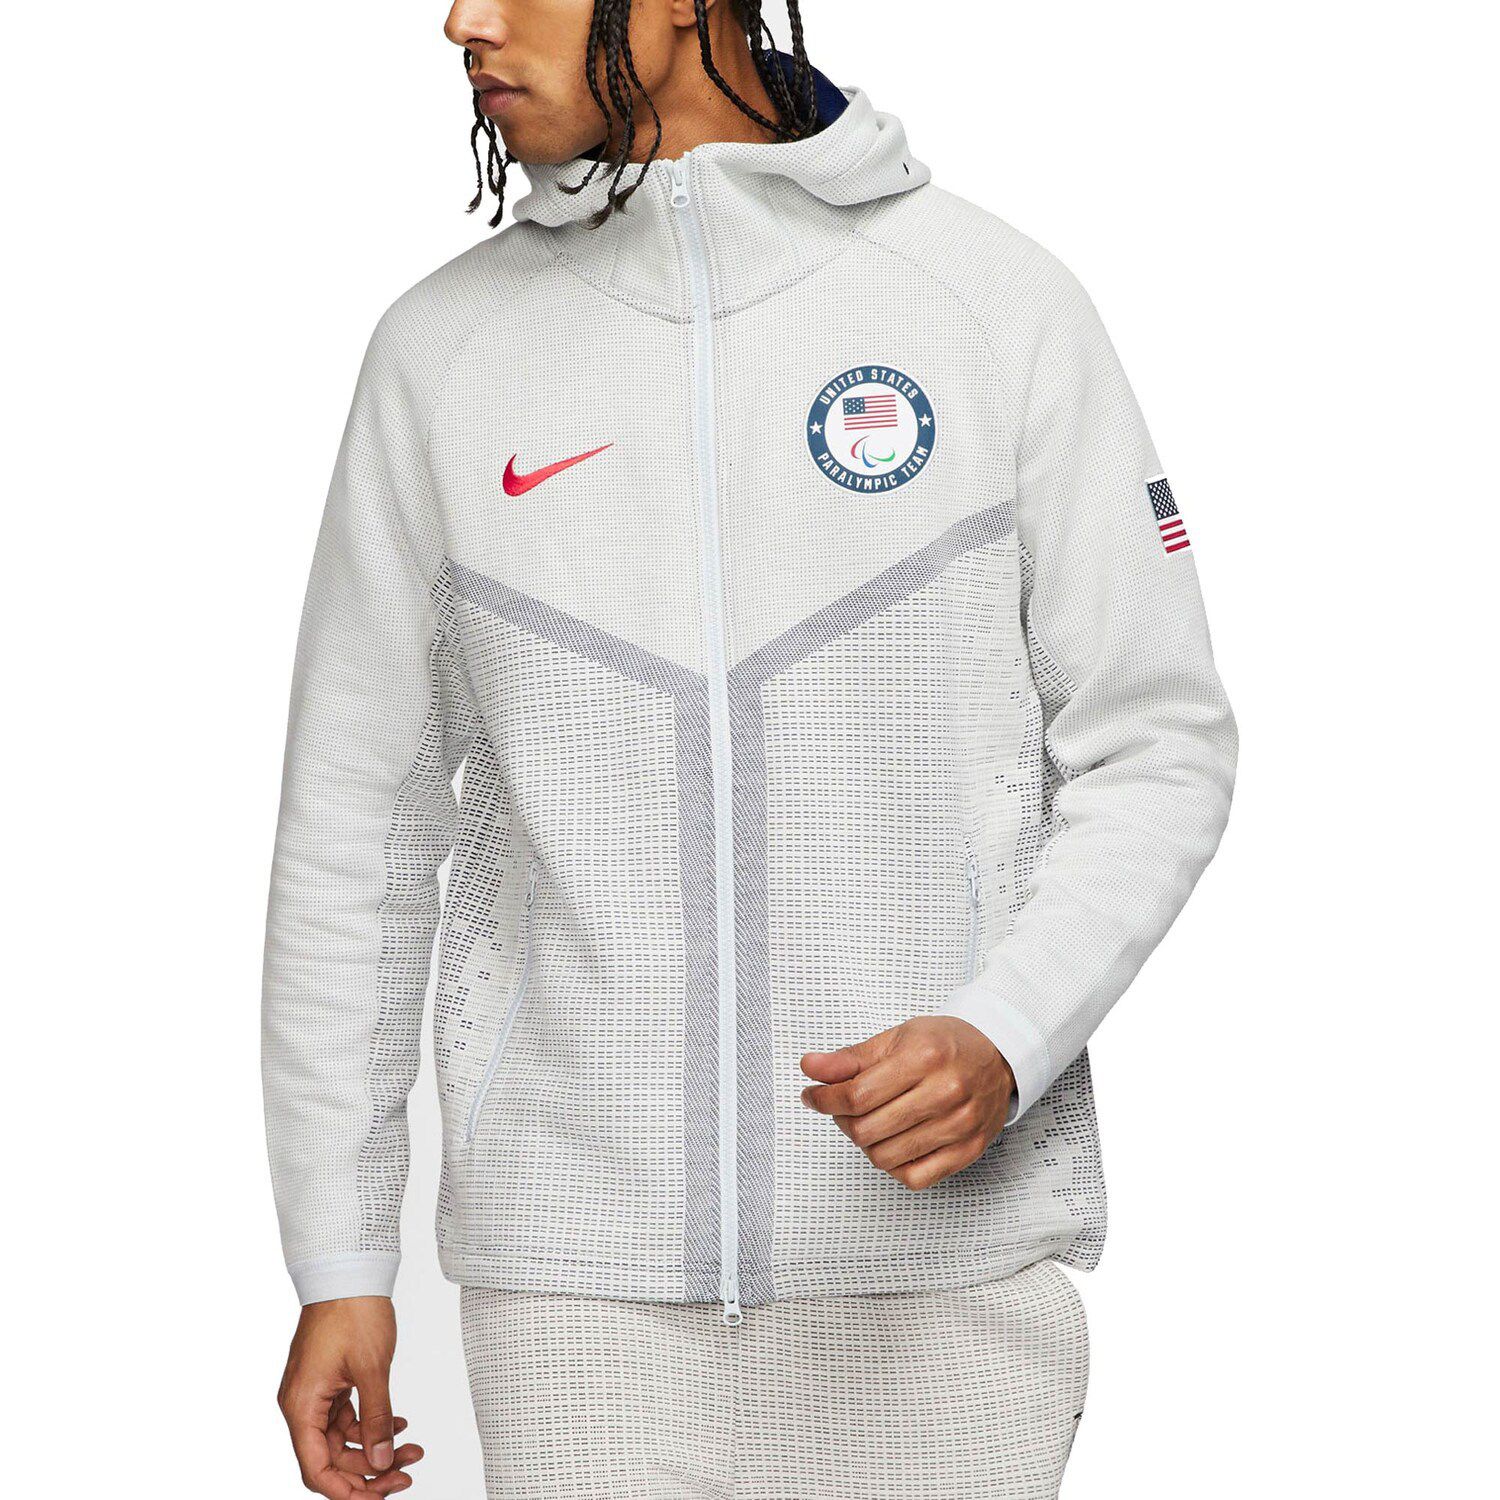 nike olympic tech fleece jacket